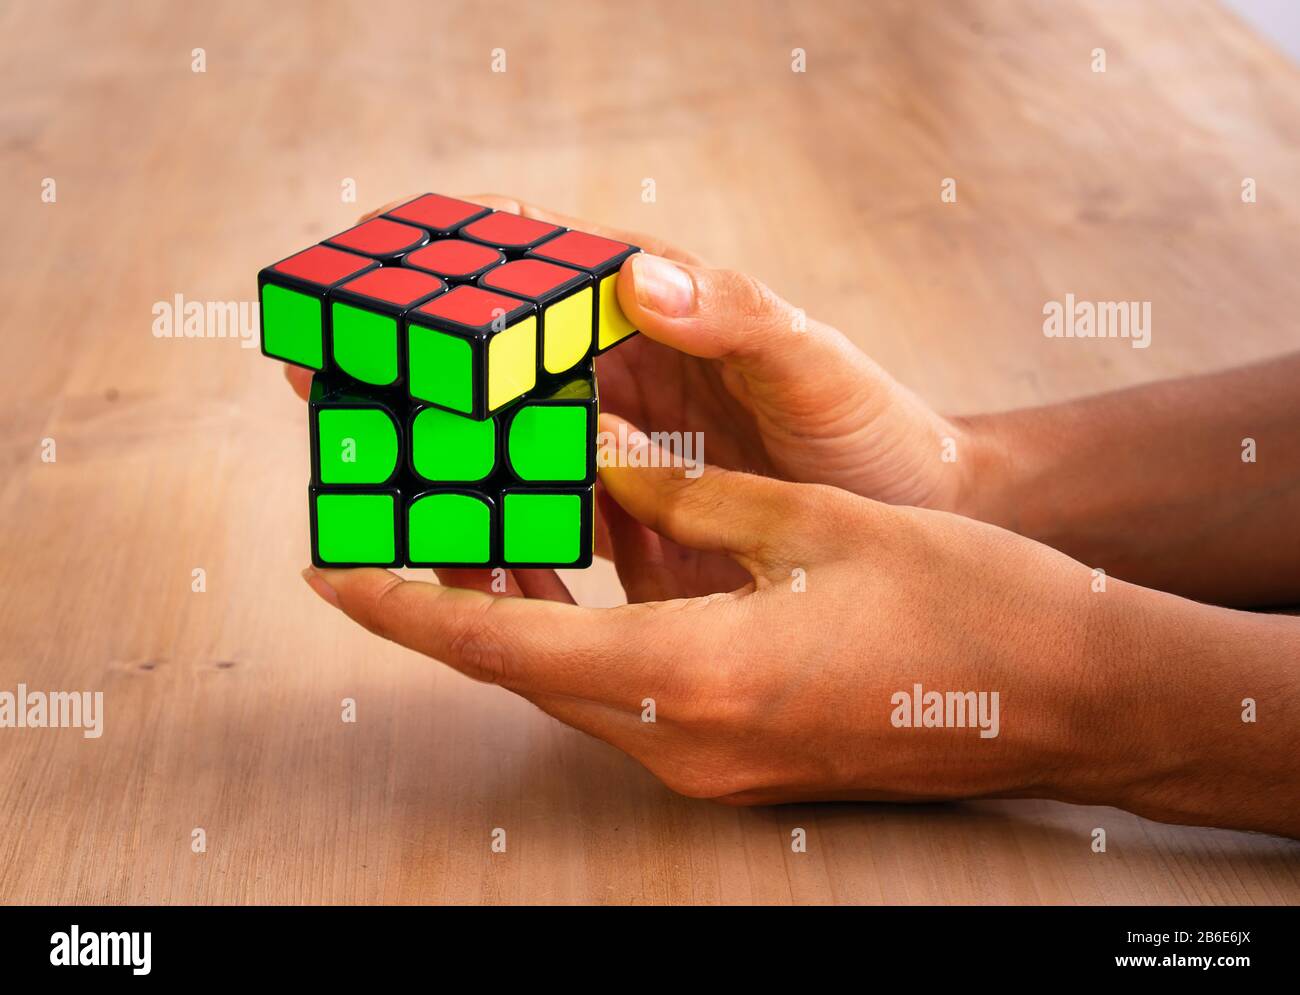 Rubik's Cube Intelligenz Spielzeug Lösung in einer Hand, in einem Holz  Tisch Stockfotografie - Alamy